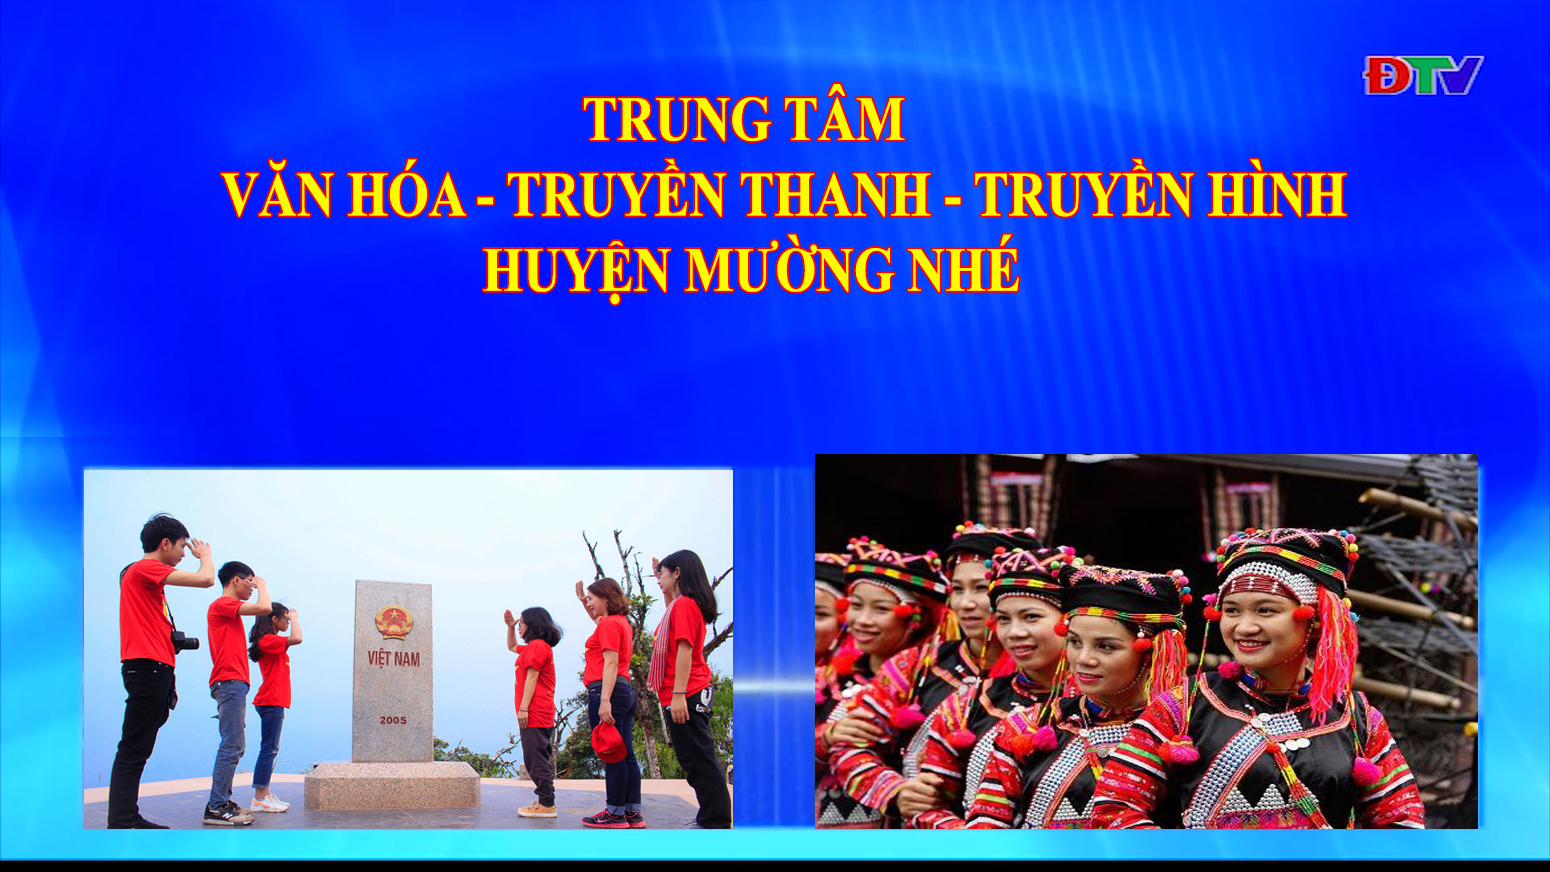 Trung tâm Văn hóa Truyền thanh Truyền hình huyện Mường Nhé (Ngày 23-4-2020)